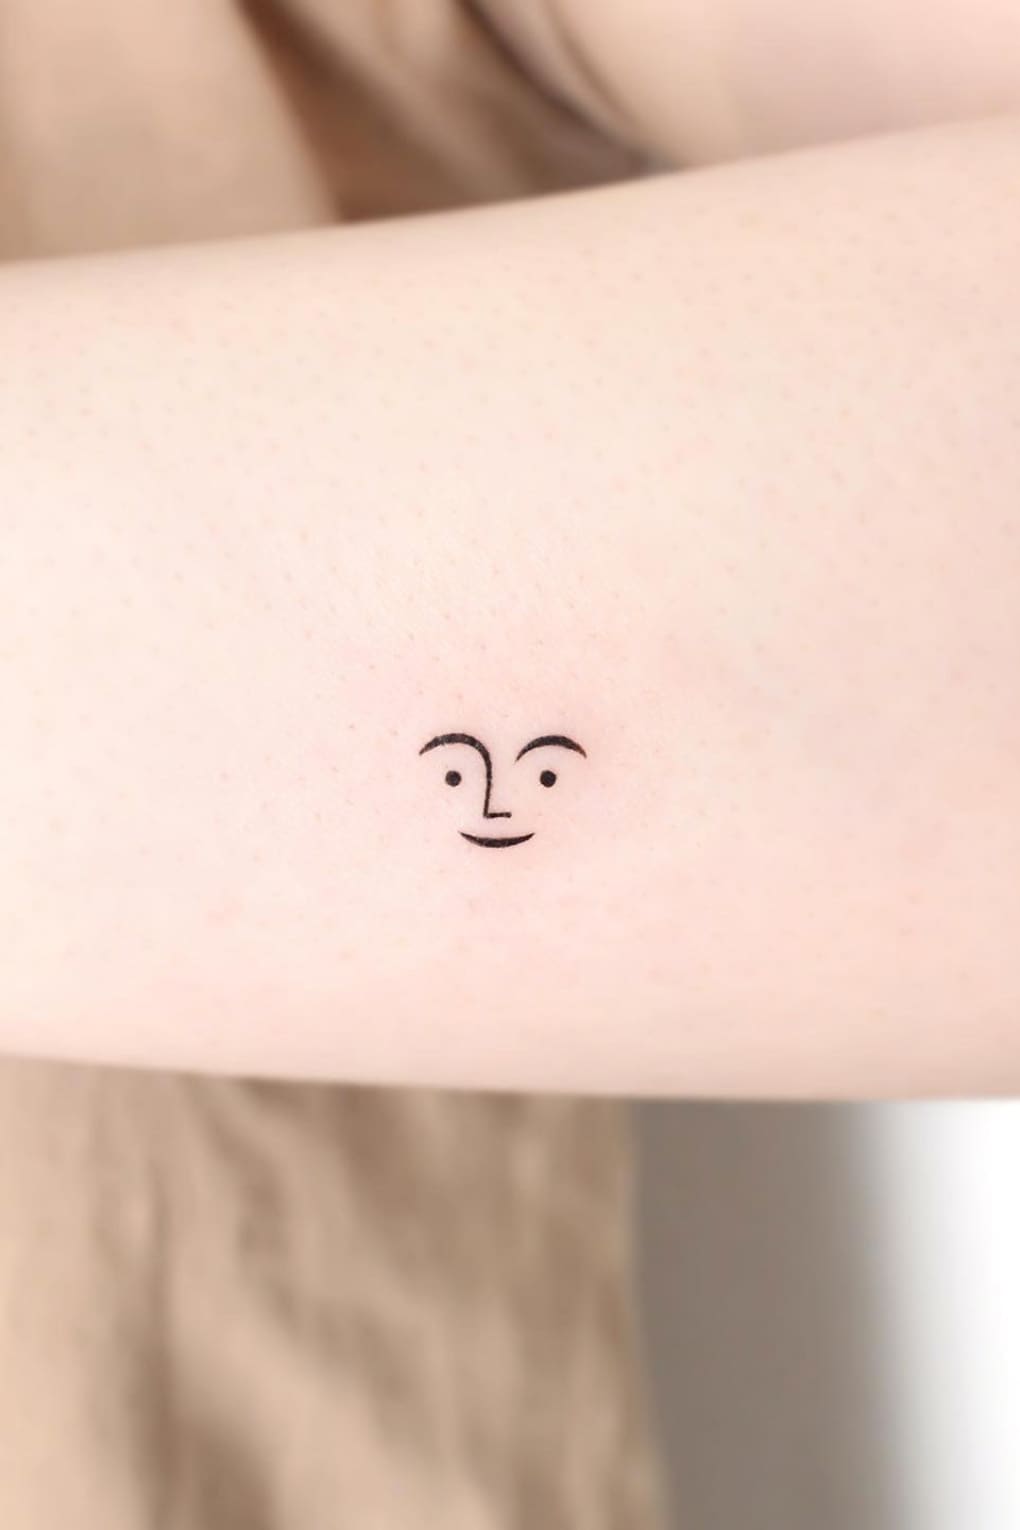 Cool Small Tattoo